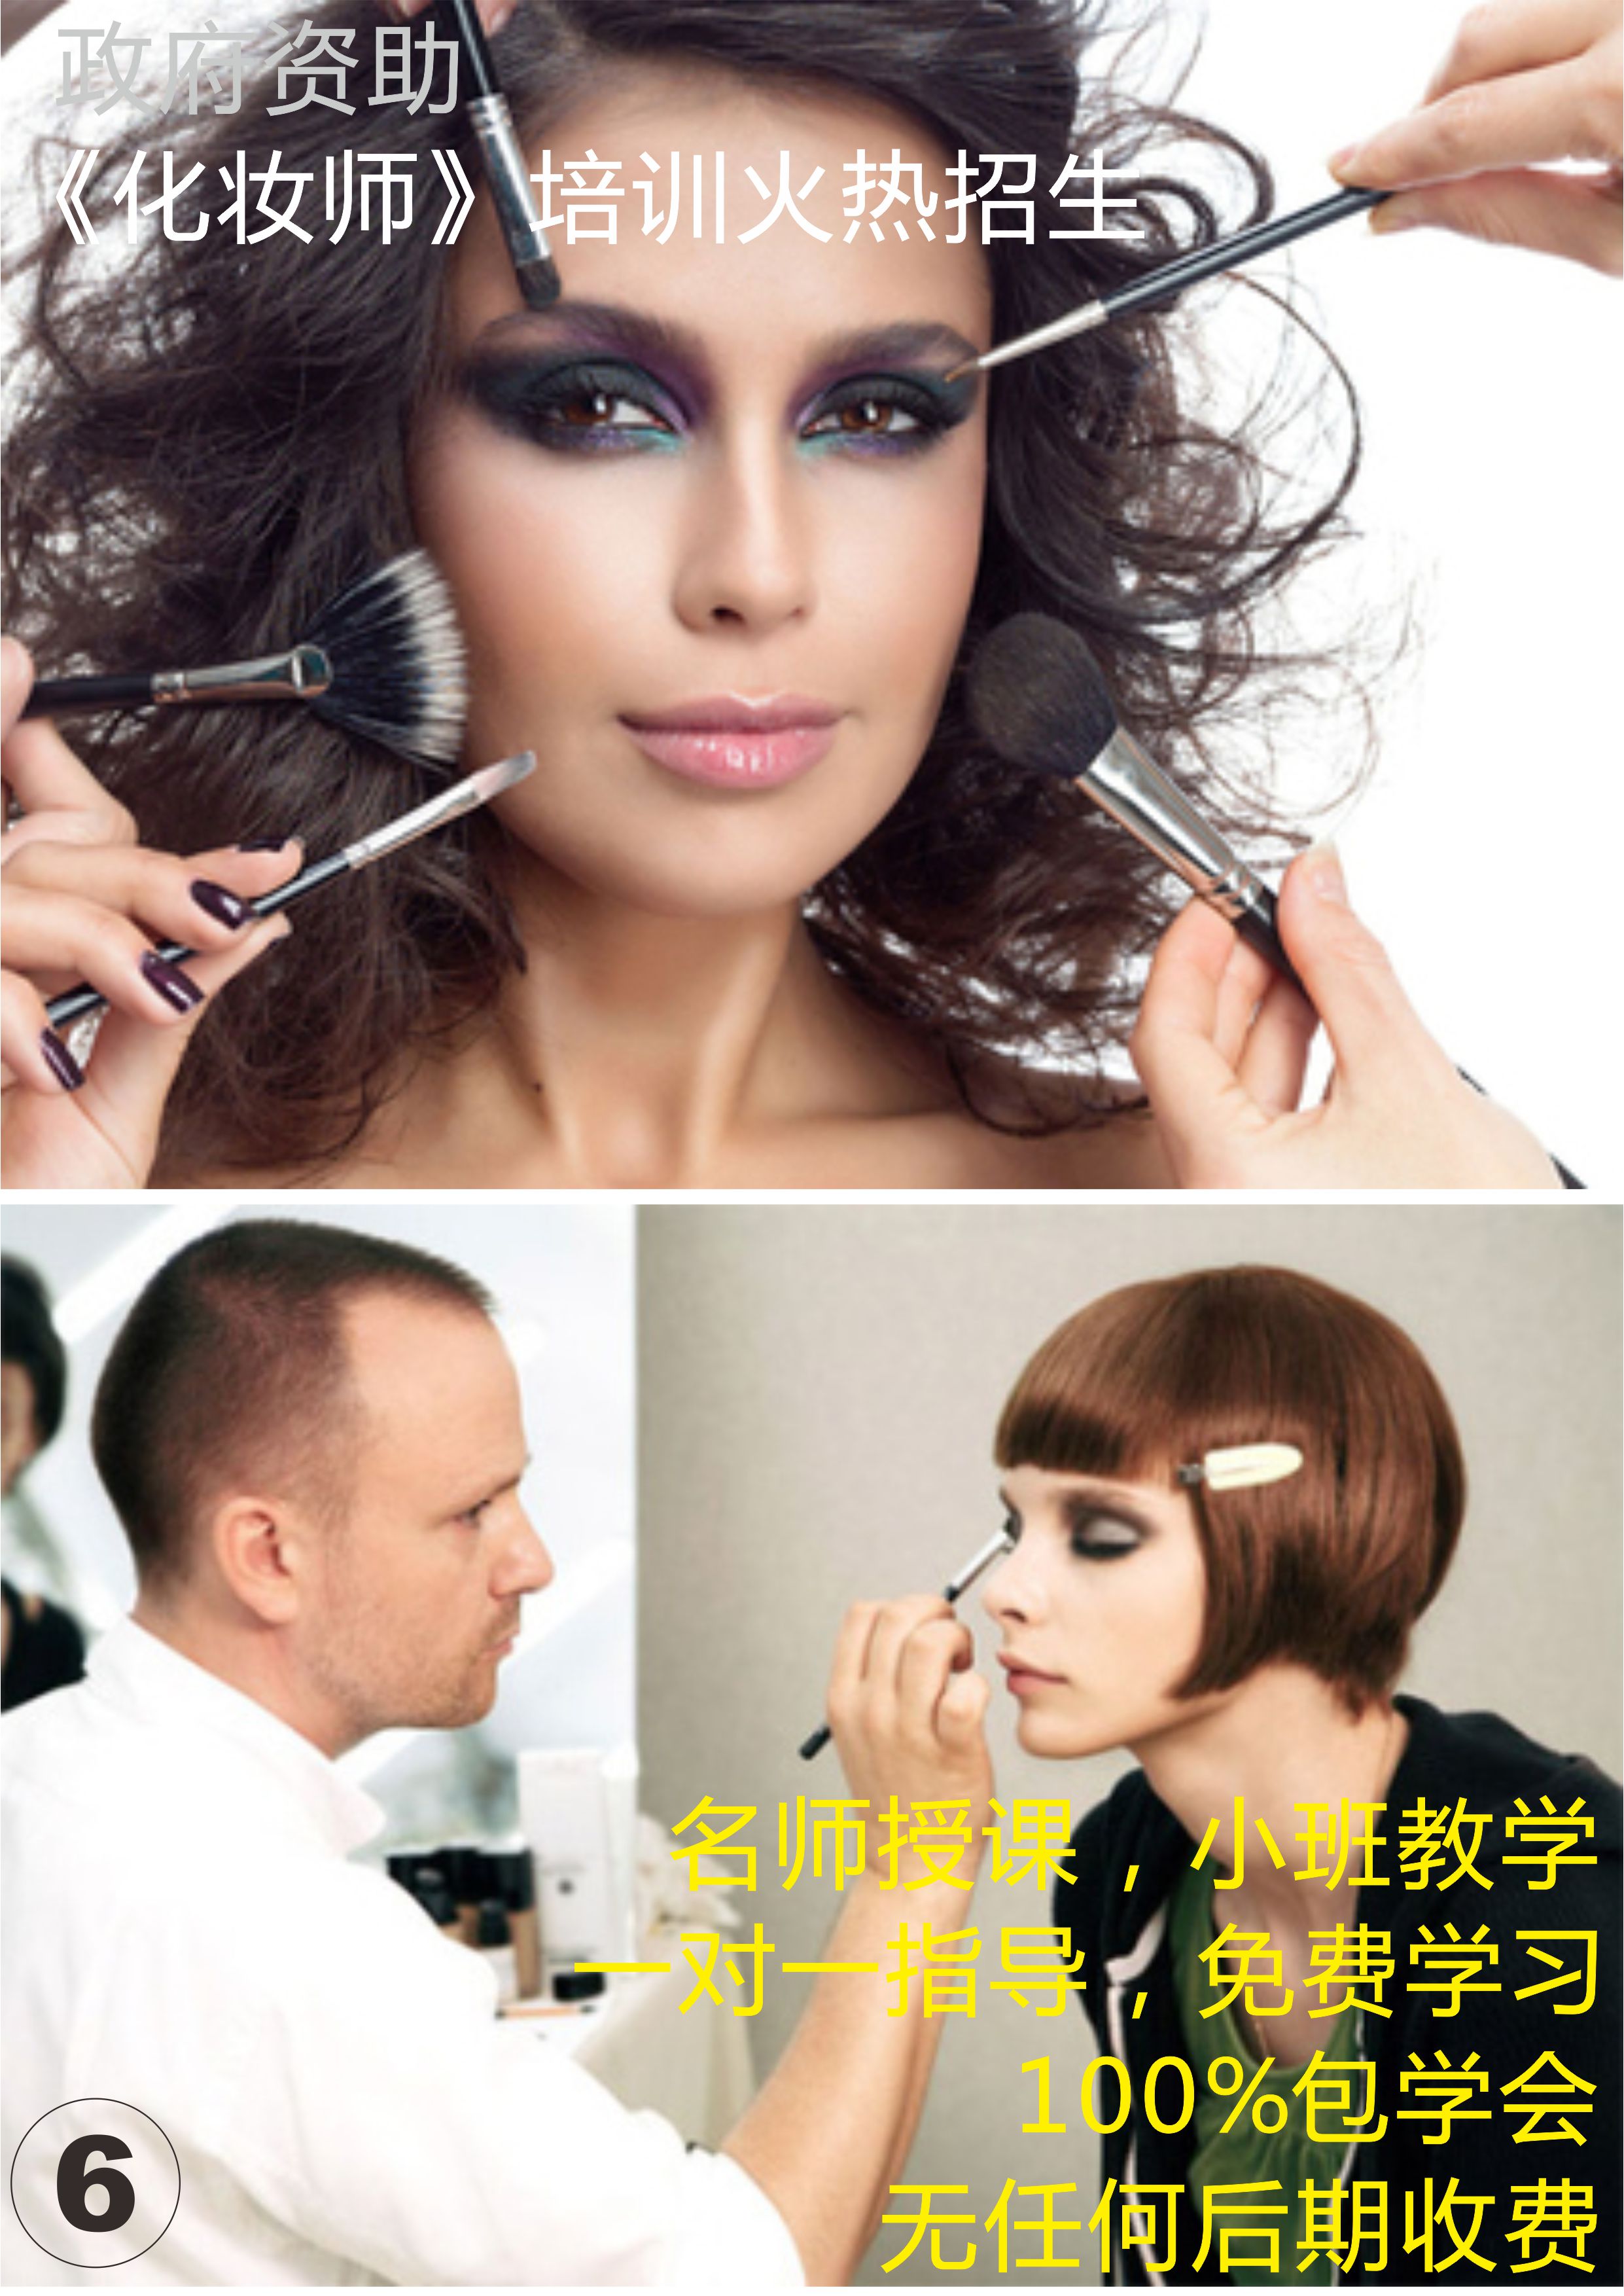 供应广州化妆师初级免费培训 专业化妆师培训机构 政府扶持 免费培训图片